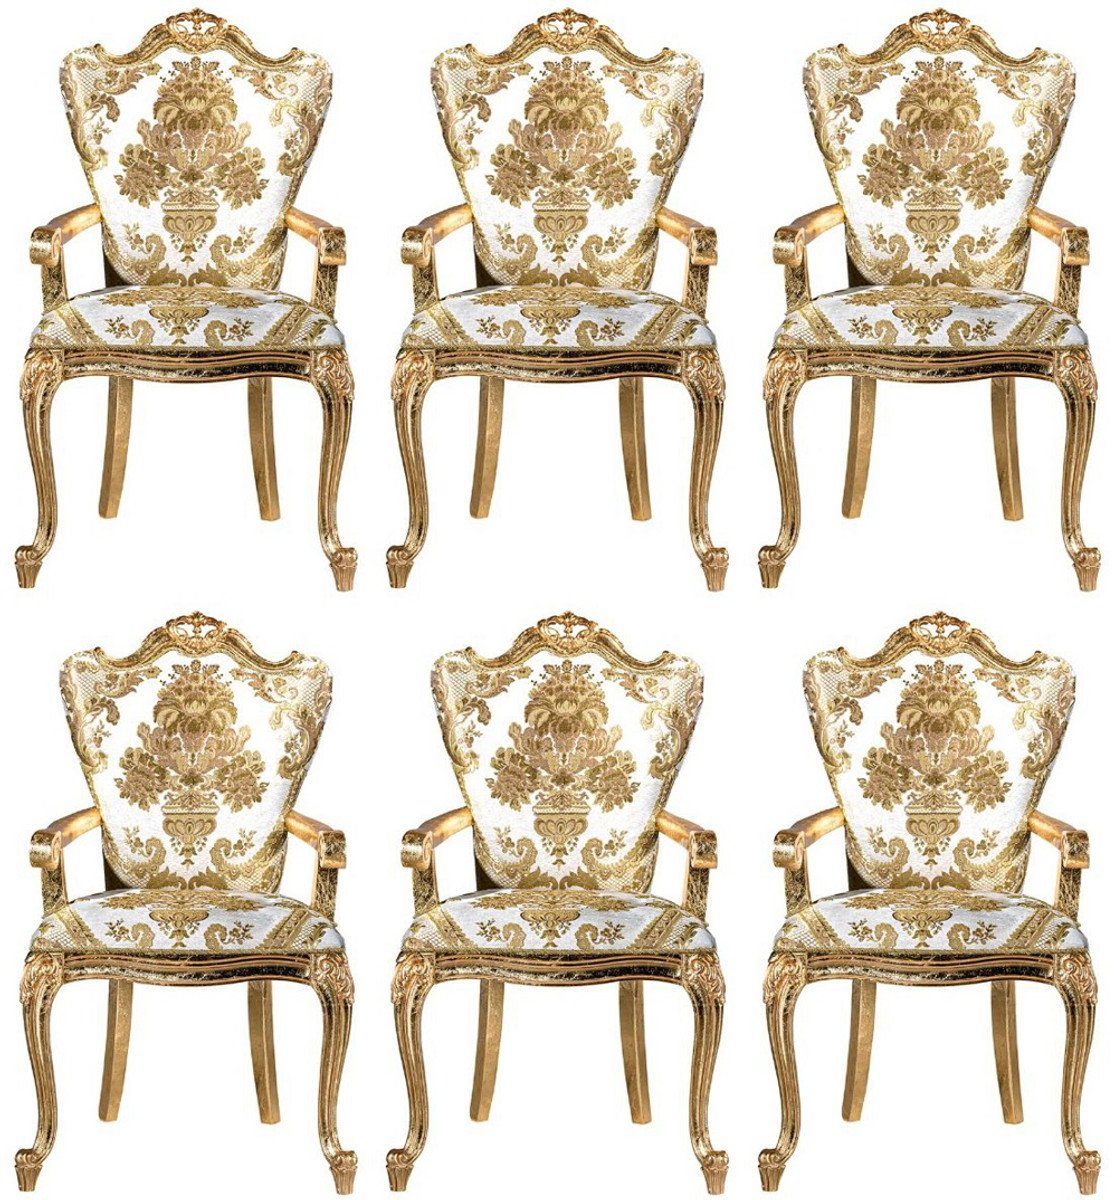 Casa Padrino Esszimmerstuhl Luxus Barock Esszimmerstuhl Set Weiß / Gold - 6 handgefertigte Küchen Stühle mit Armlehnen und elegantem Muster - Barock Esszimmer Möbel - Edel & Prunkvoll